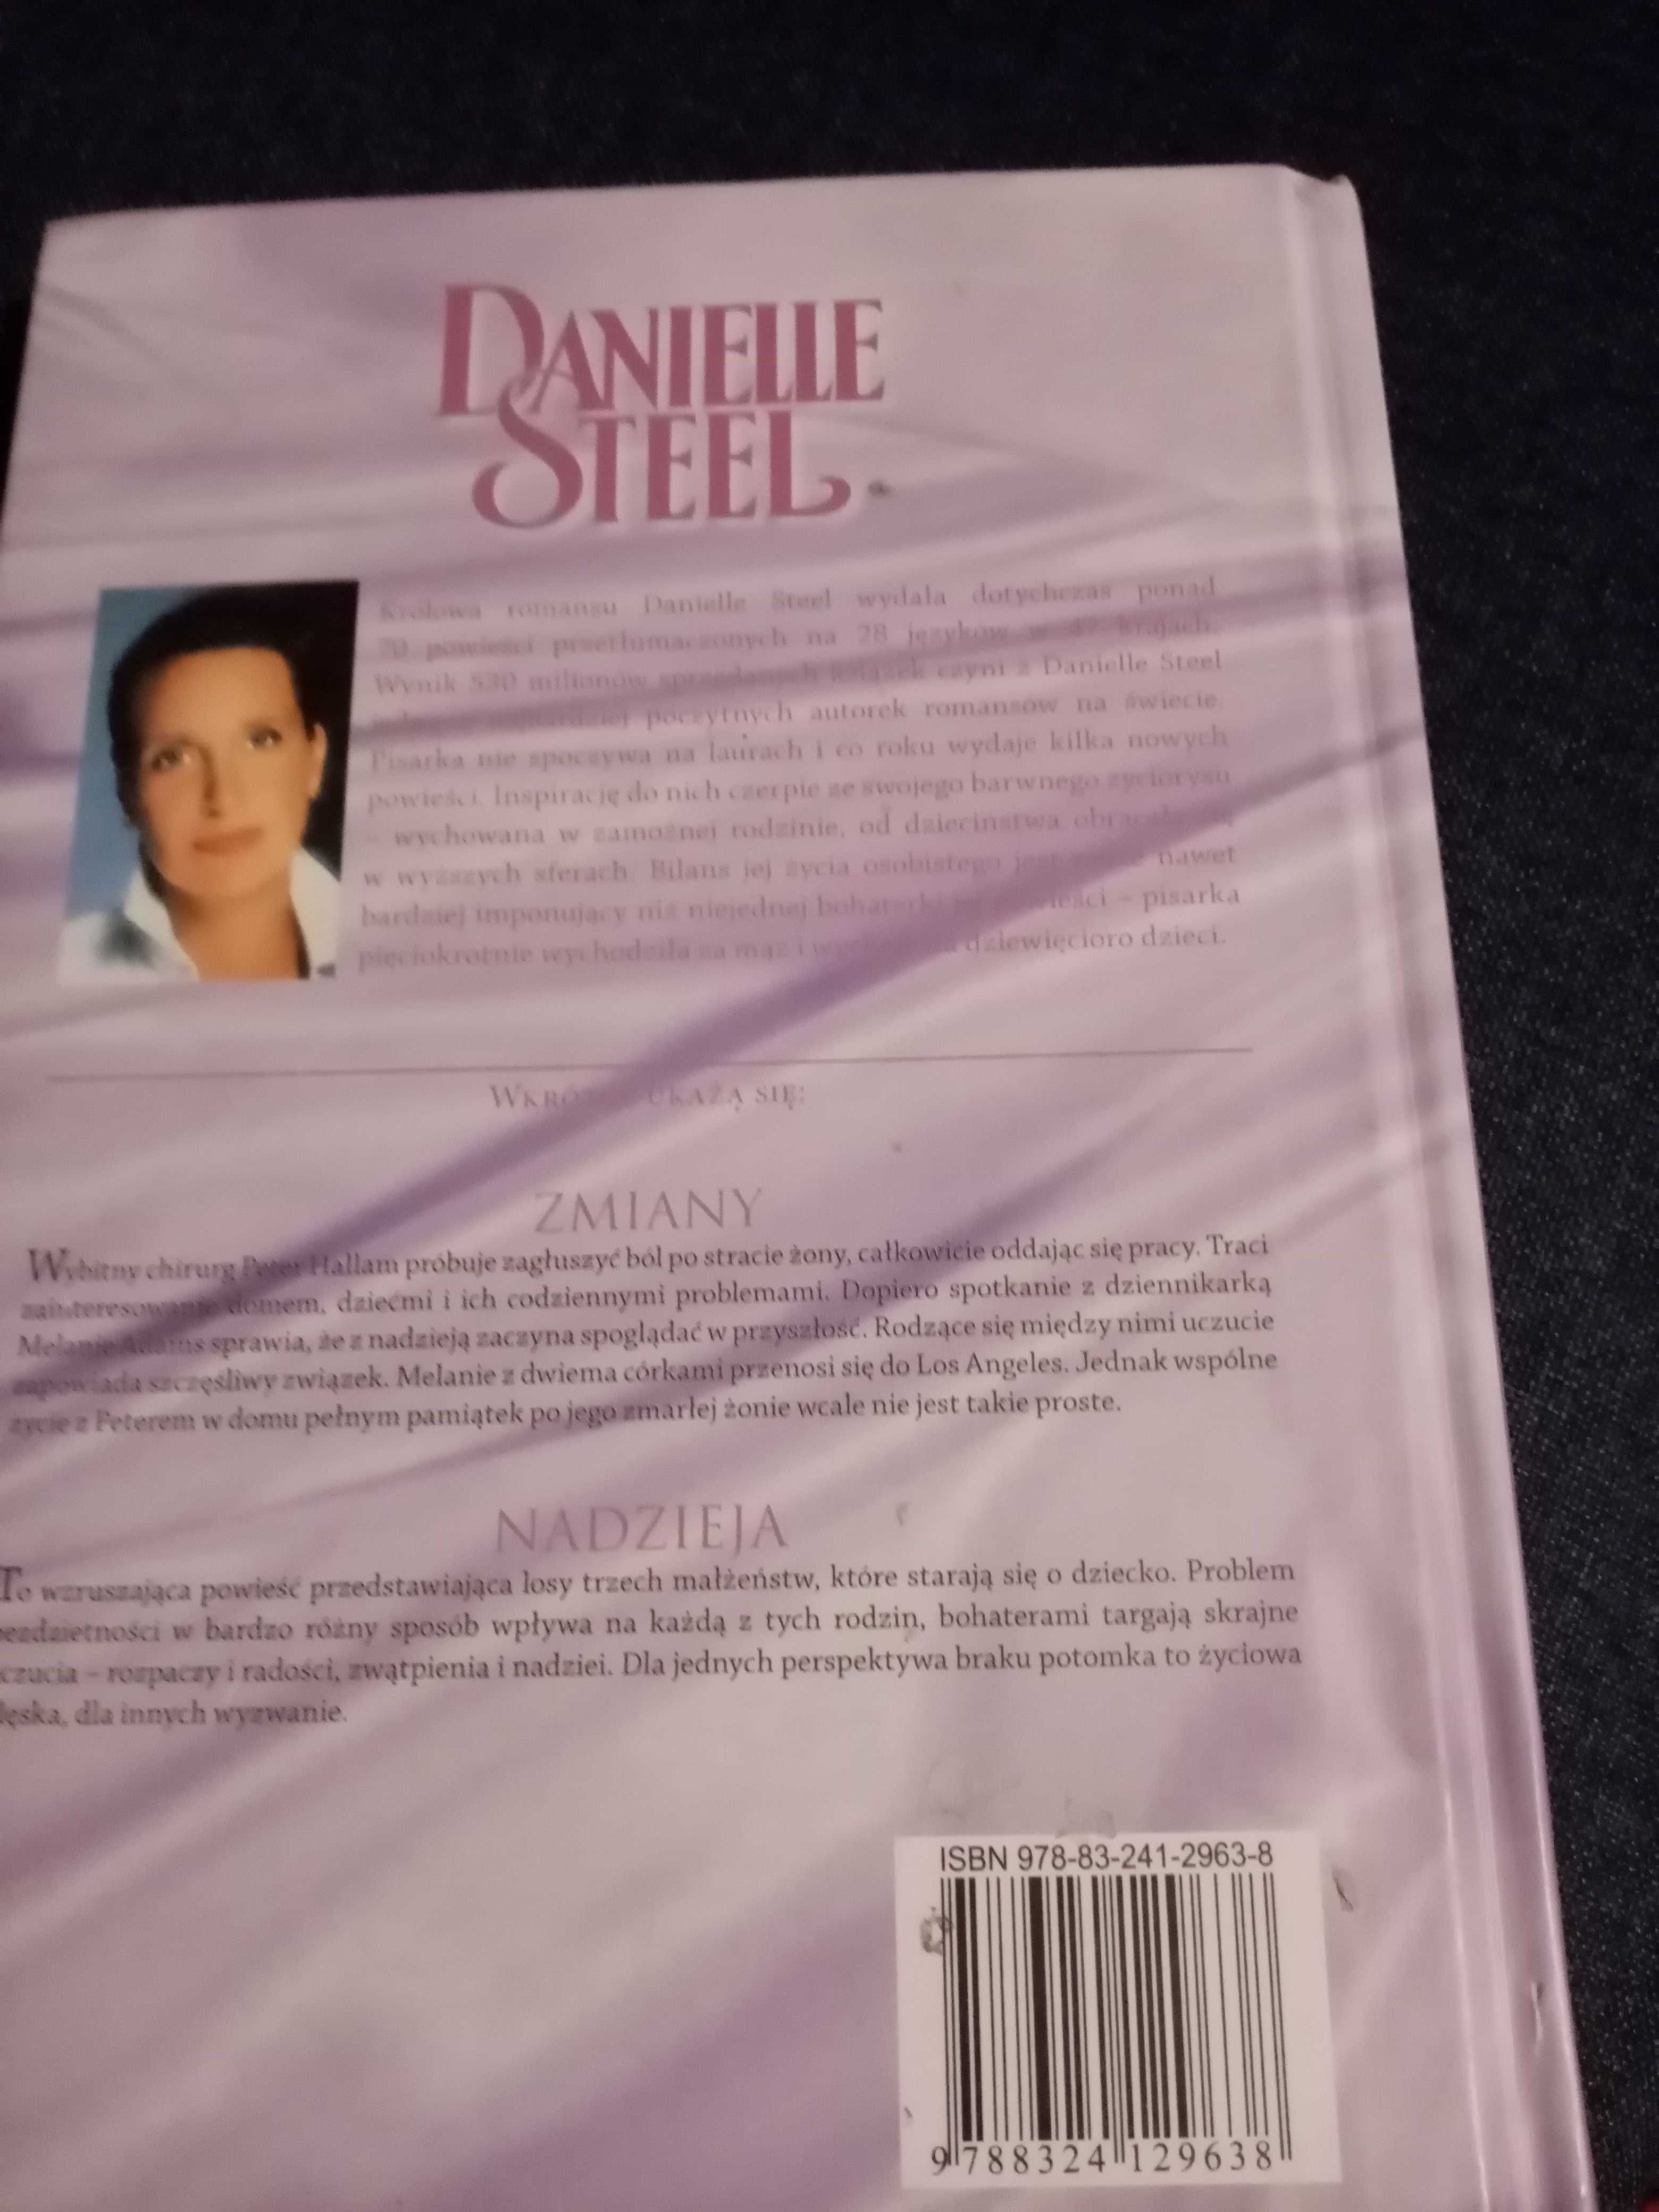 Książka Daniel Steel "Tata"